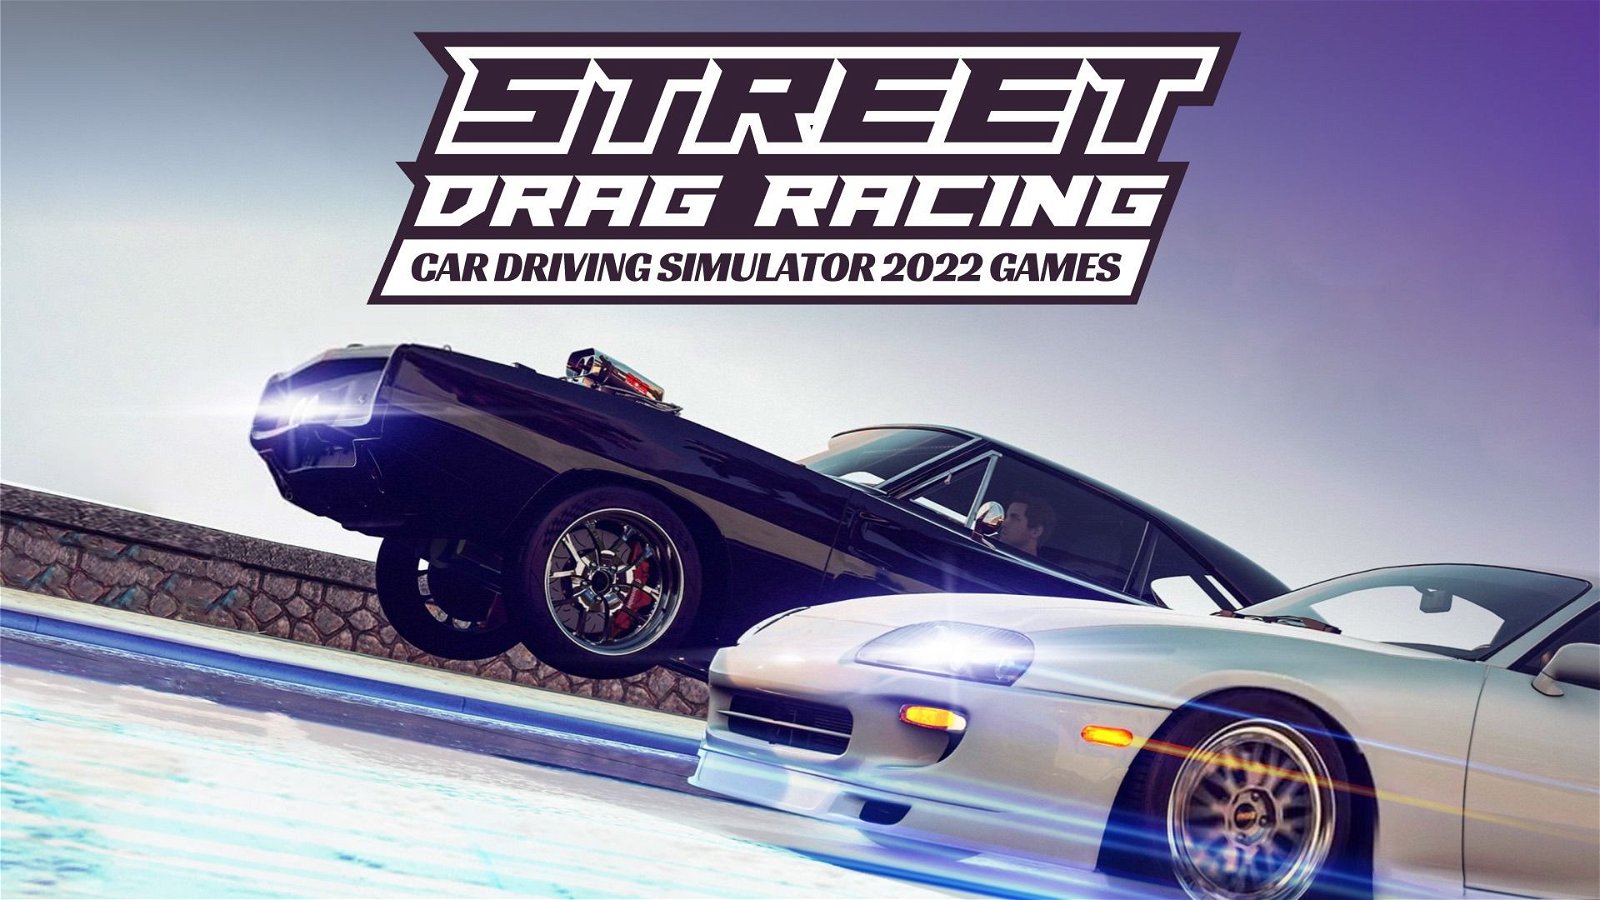 Image of Street Drag Racing Car Driving Simulator 2022 Games